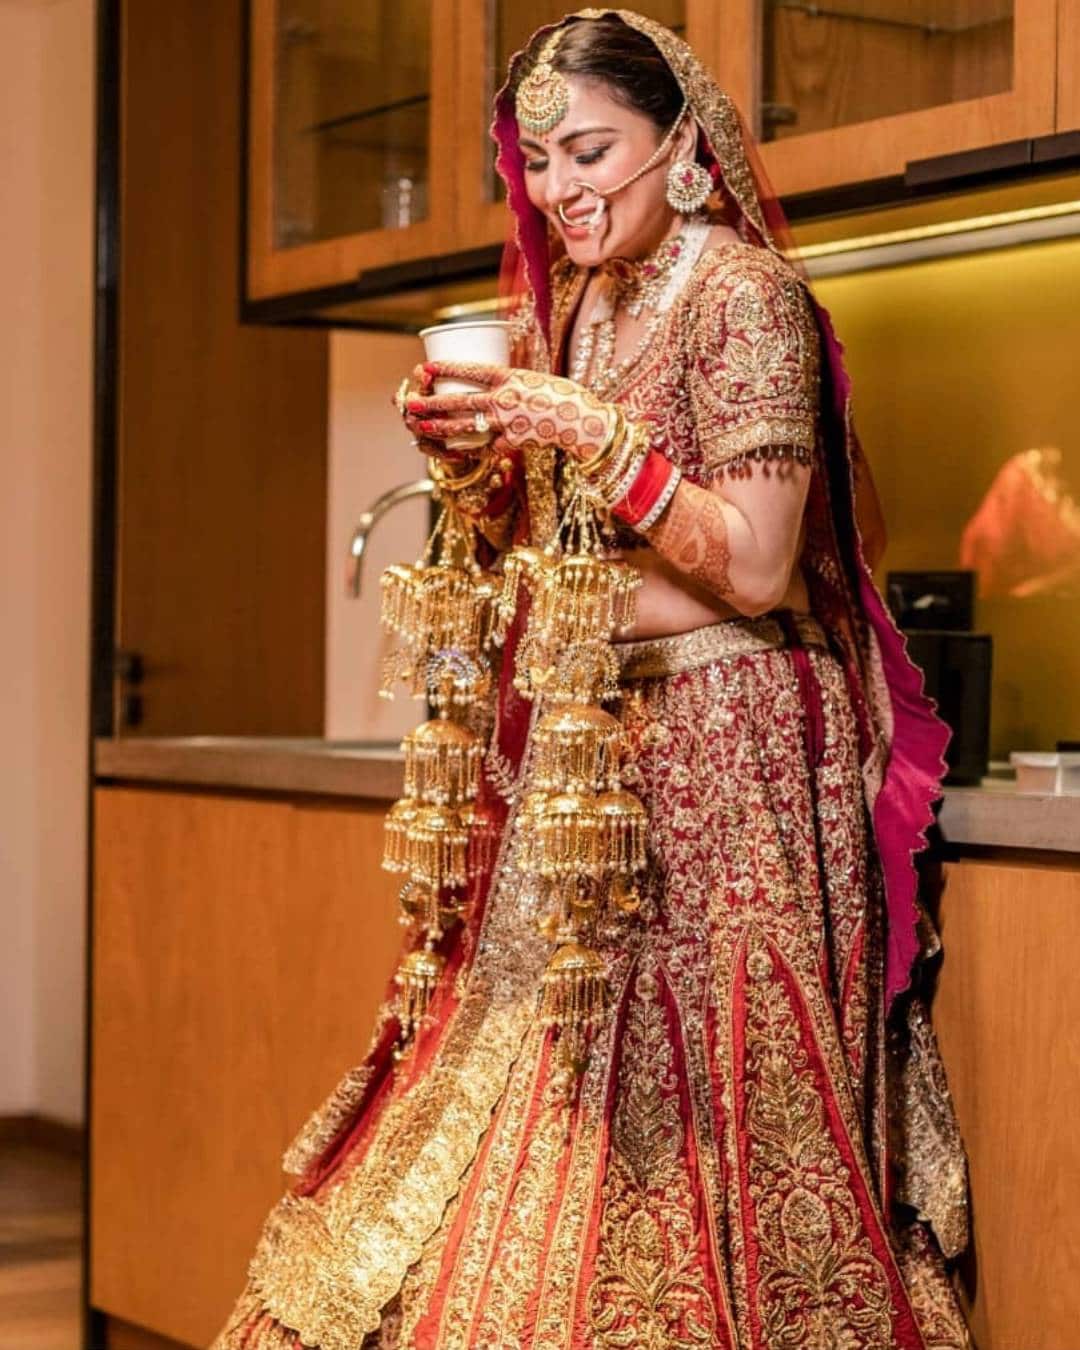  श्रद्धा ने शादी के लिए रीगल रेड कलर लहंगा पहना था. उन्होंने इन तस्वीरों को शेयर करते हुए 'जस्ट मैरिड' लिखा. साथ ही दिल वाले इमोजी के साथ हैशटैग श्रद्धा आर्या नागल लिखा. (फोटो साभारः Instagram @theeventdesignerindia)